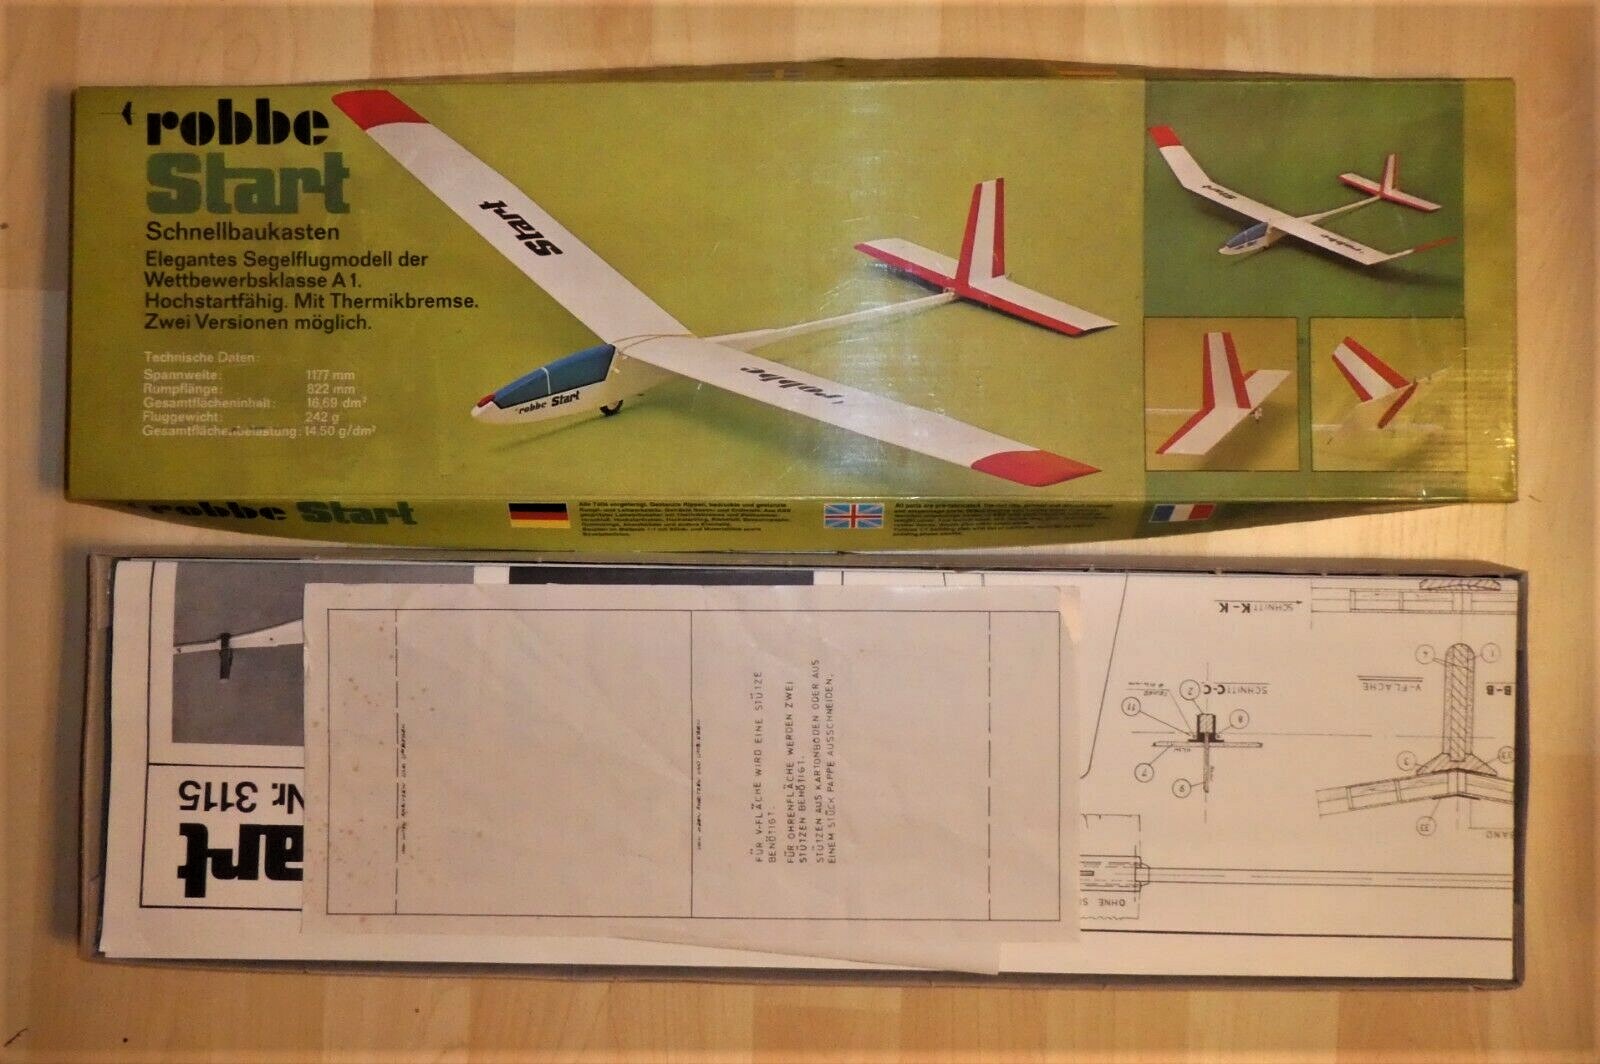 Rarität-Robbe-Start-Schnellbaukasten-Segelflugzeug-in-Ovp-vintage (2).jpg